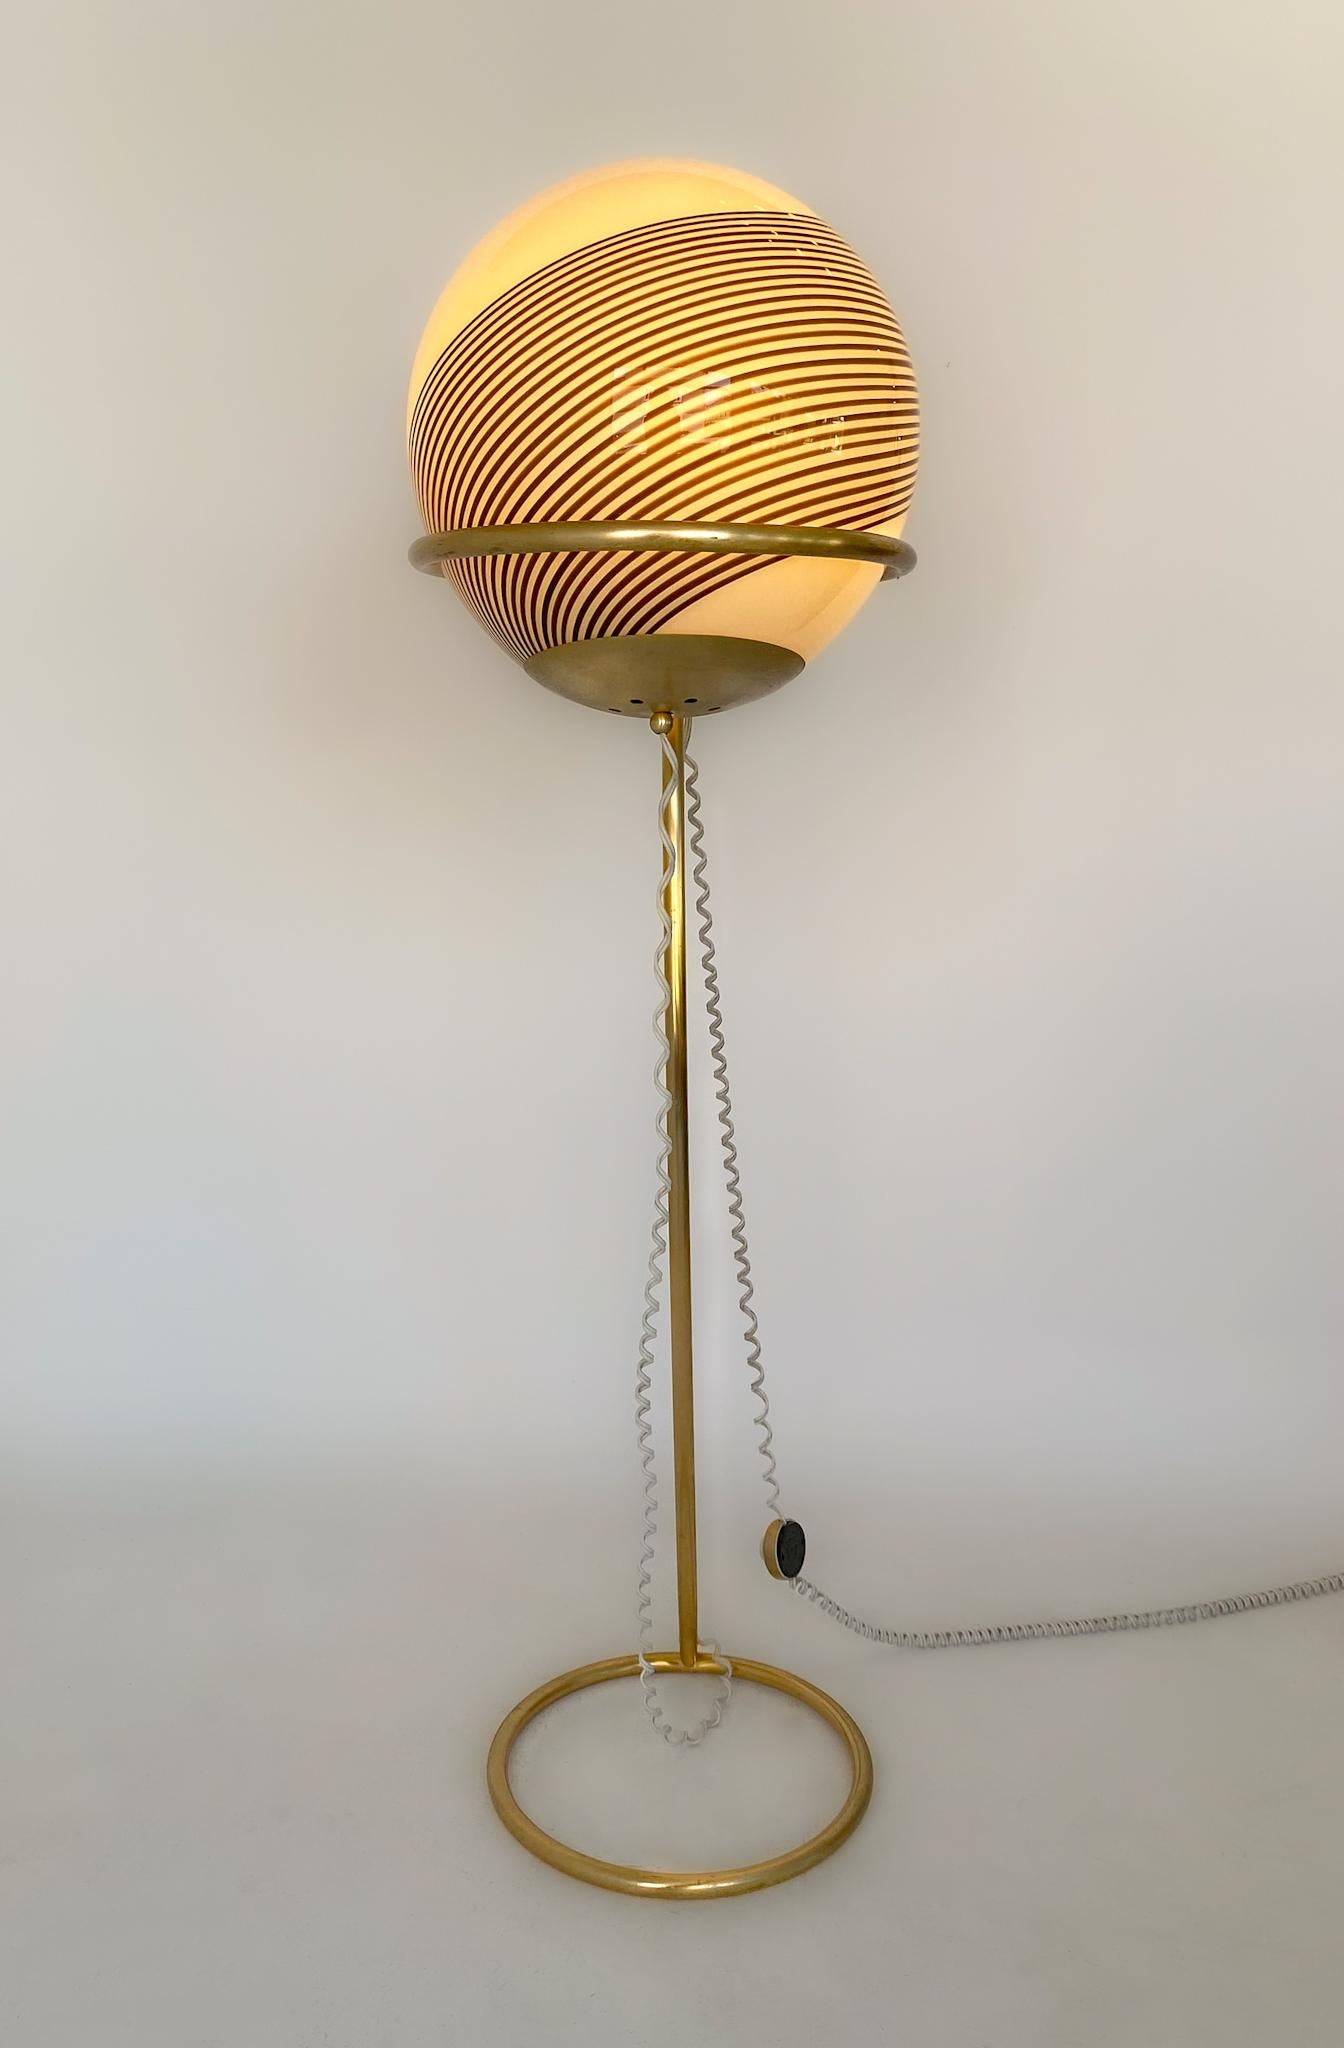 Moderne Stehlampe aus mundgeblasenem Murano-Glas mit Kugel aus Messing im Stil von Venini, Italien 1960er Jahre.

Eine sehr schöne und in ihrer Form einzigartige italienische Murano Glas Stehlampe mit einem Messingfuß von dem berühmten